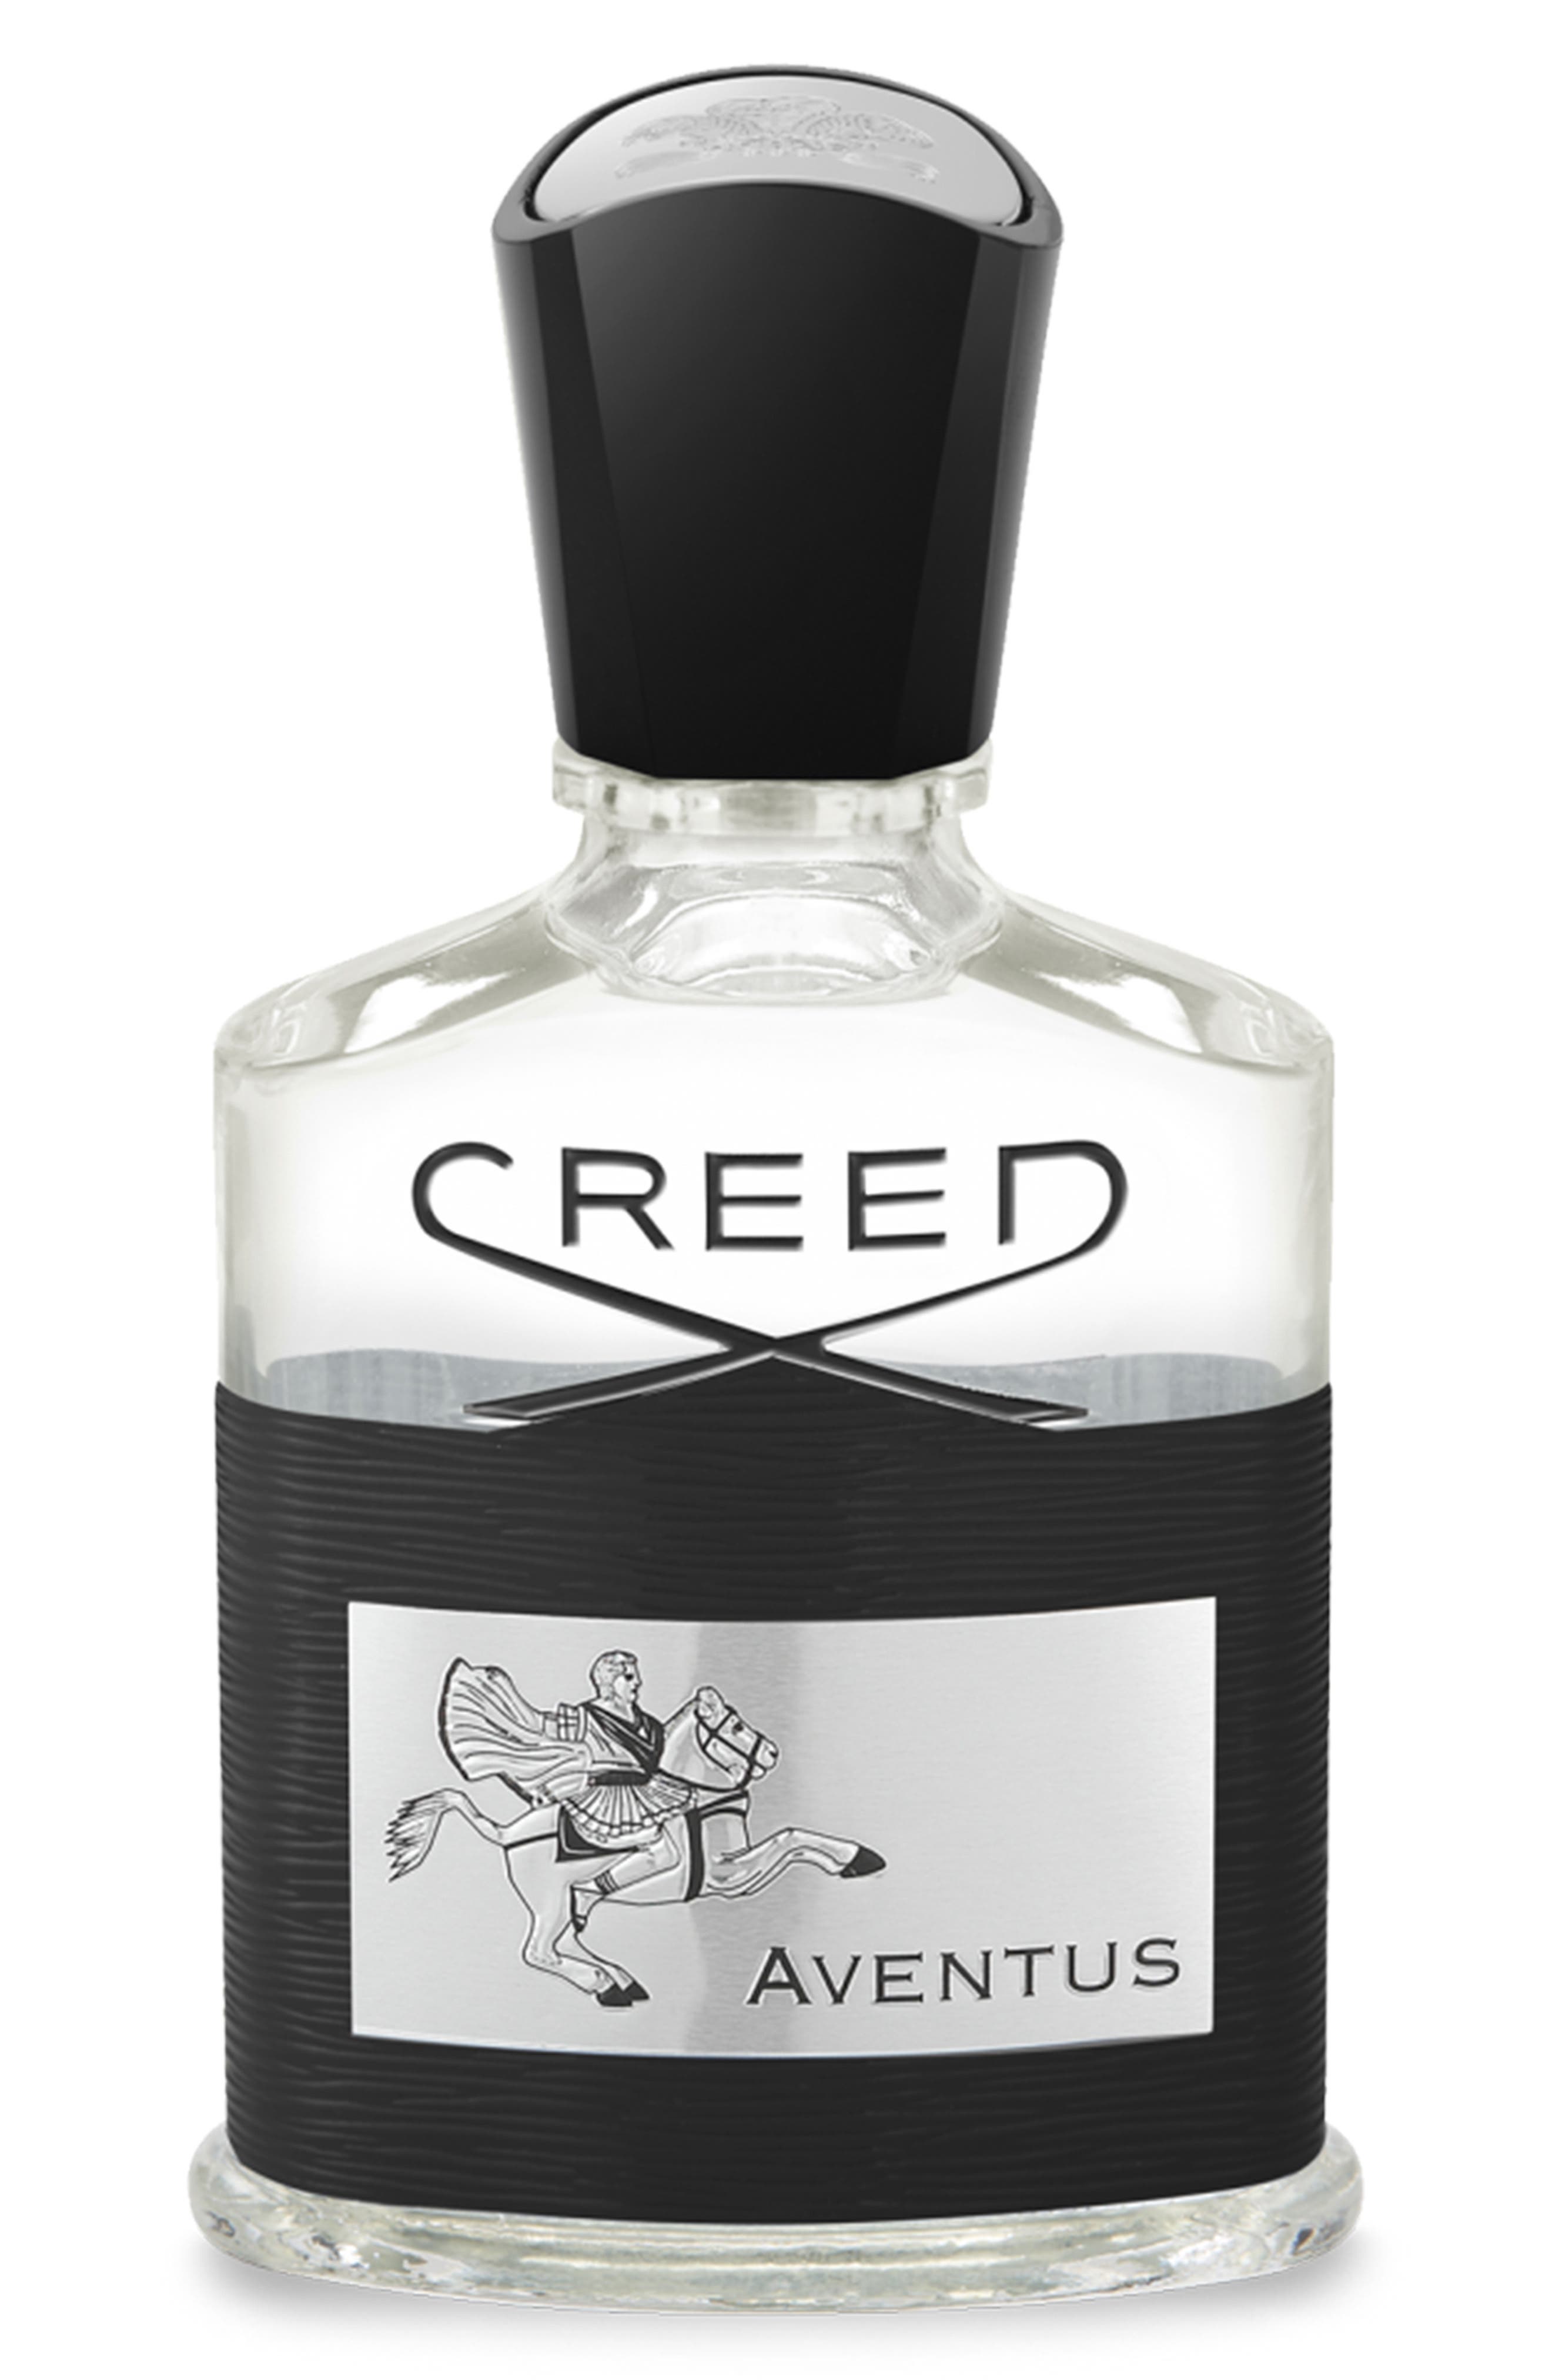 creed white bottle perfume